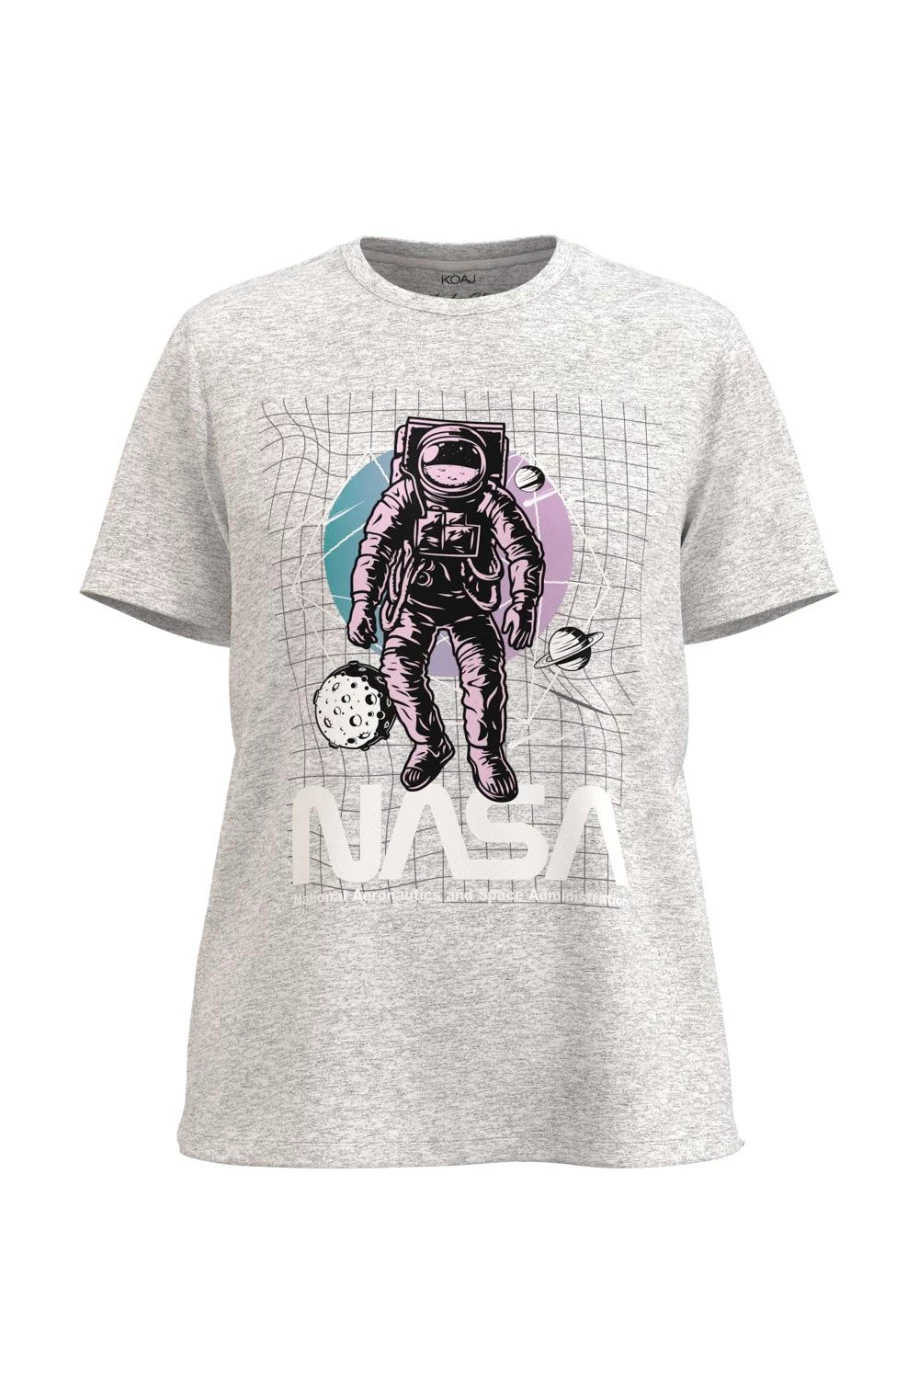 Camiseta unicolor con estampado de NASA y cuello redondo